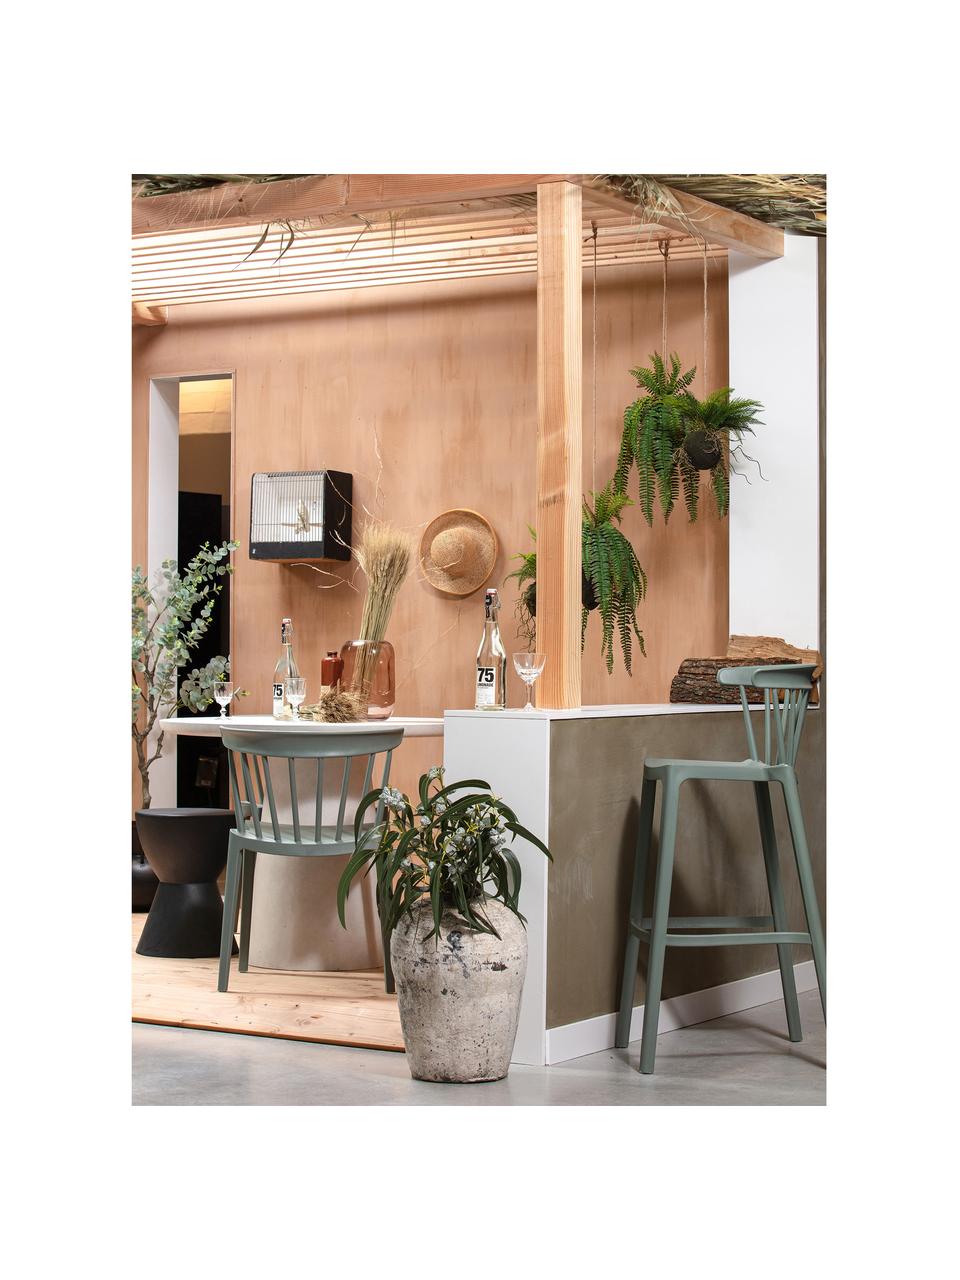 Skladacia záhradná stolička Bliss, Polypropylén, Šalviová zelená, Š 52 x H 53 cm